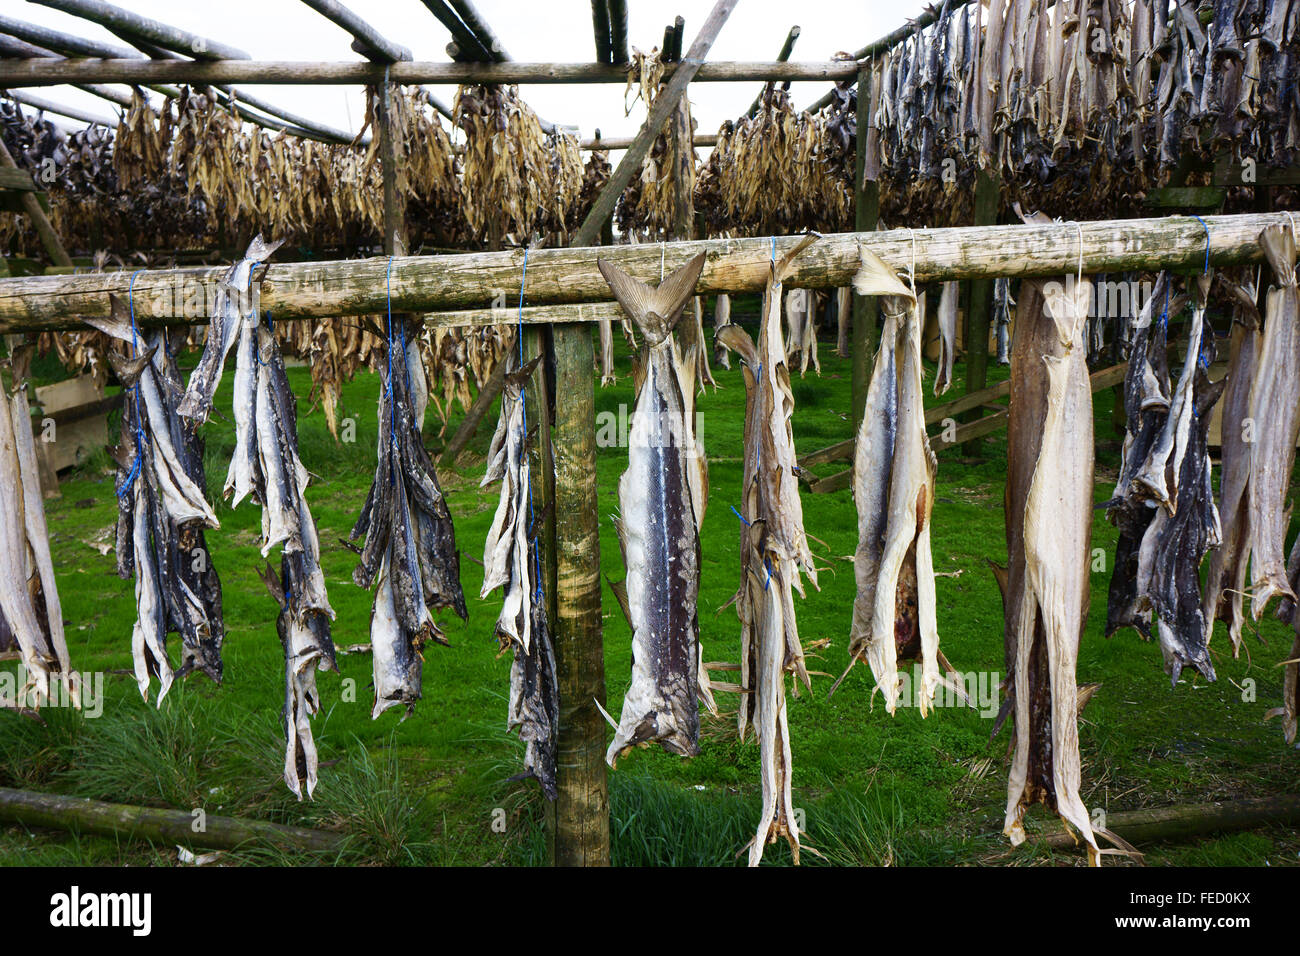 Stockfish, air dried fish hanging sur des supports à l'est de Réthymnon, le long de la route1, Islande Banque D'Images